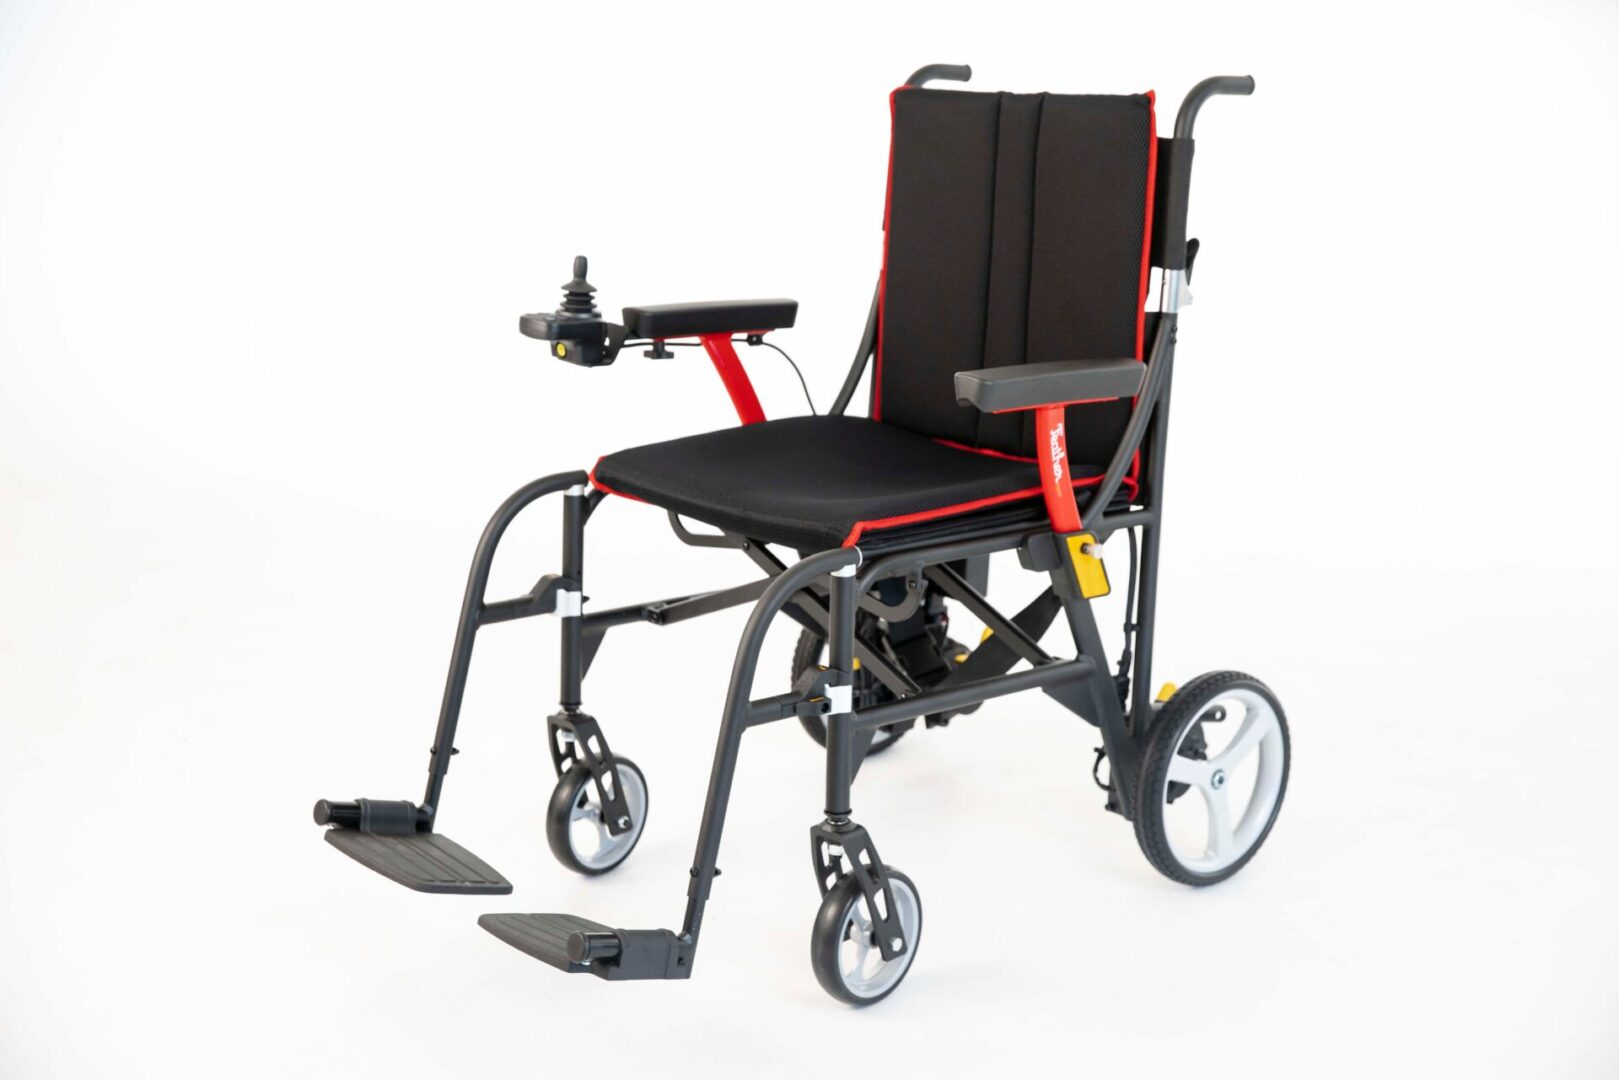 CPAP Supplies, Wheelchairs